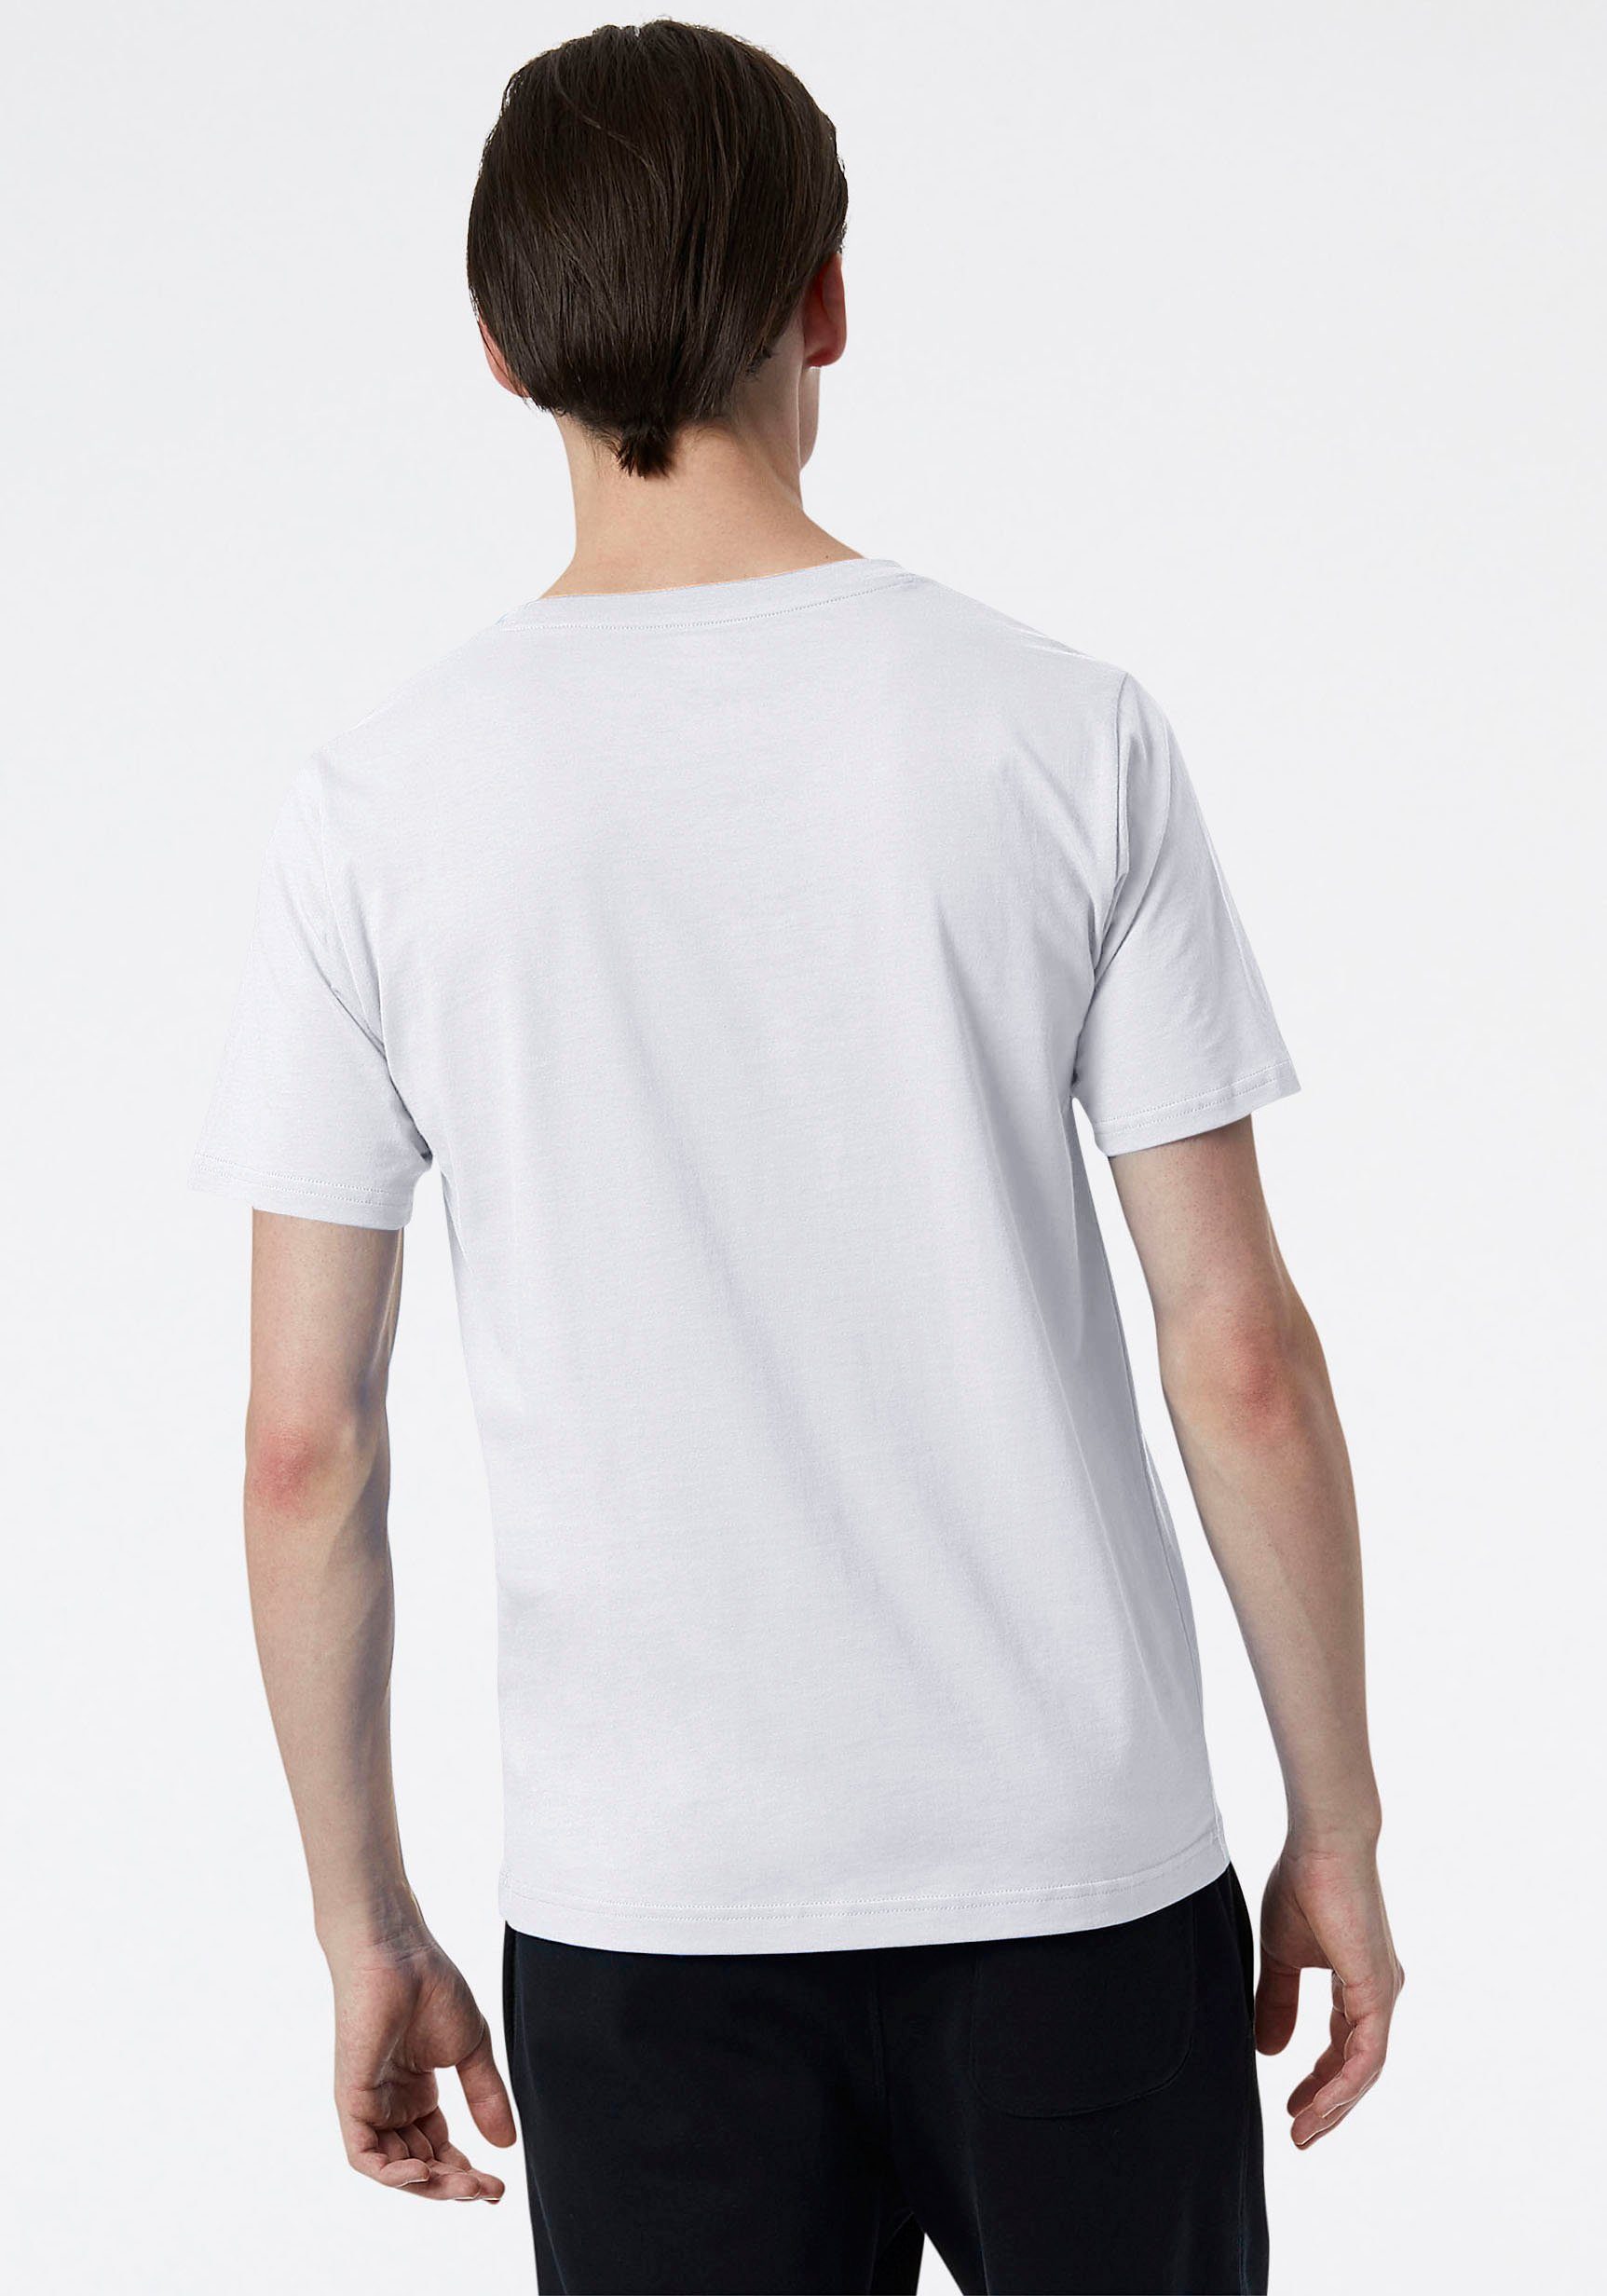 ESSENTIALS LOGO New Balance weiß STACKED T-SHIRT NB T-Shirt